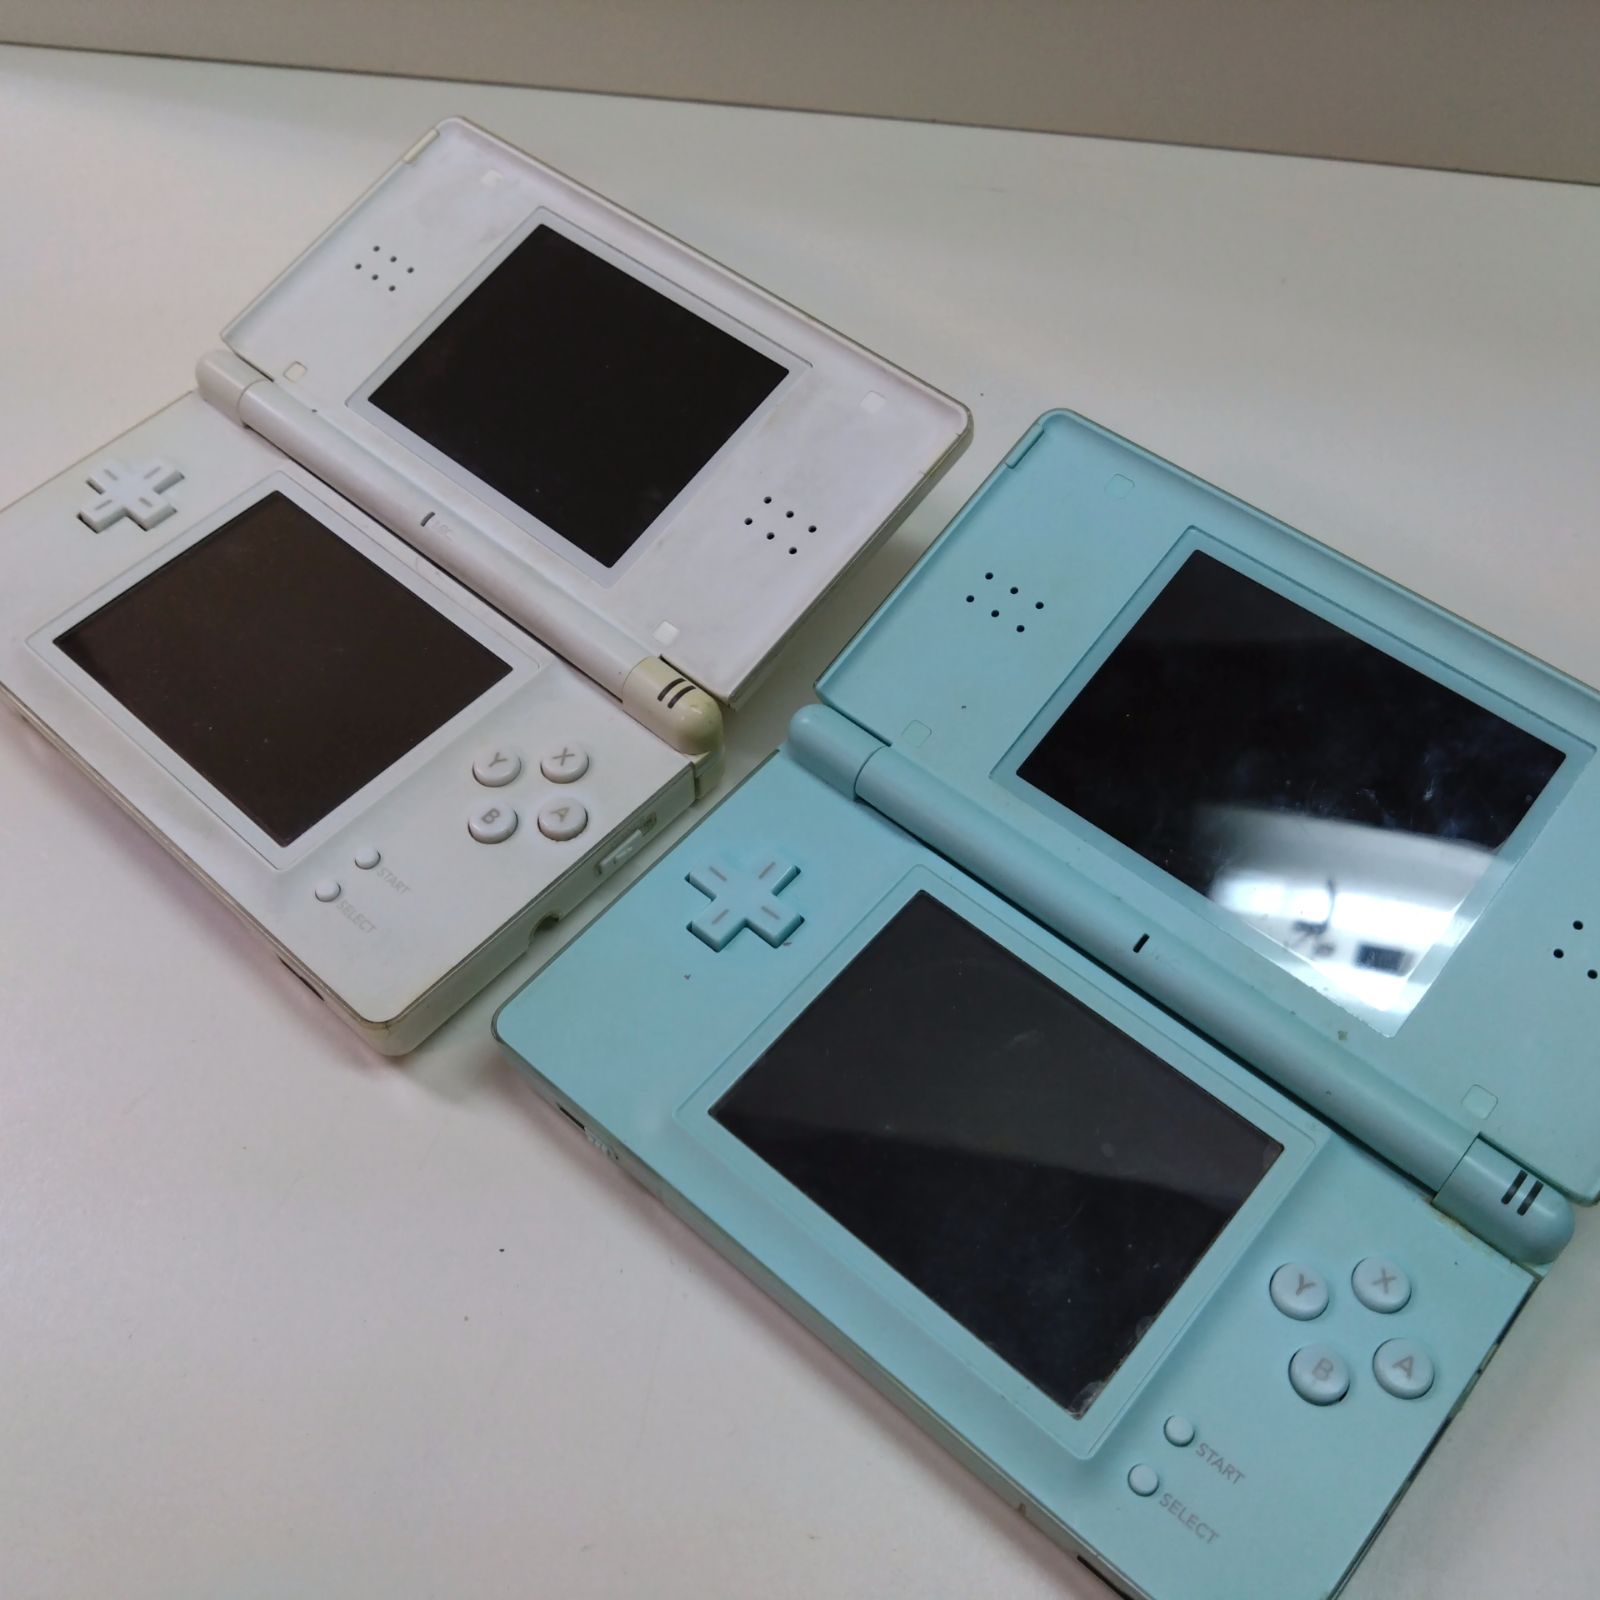 ニンテンドーDS Lite ジャンク品 4台まとめ売り - Nintendo Switch